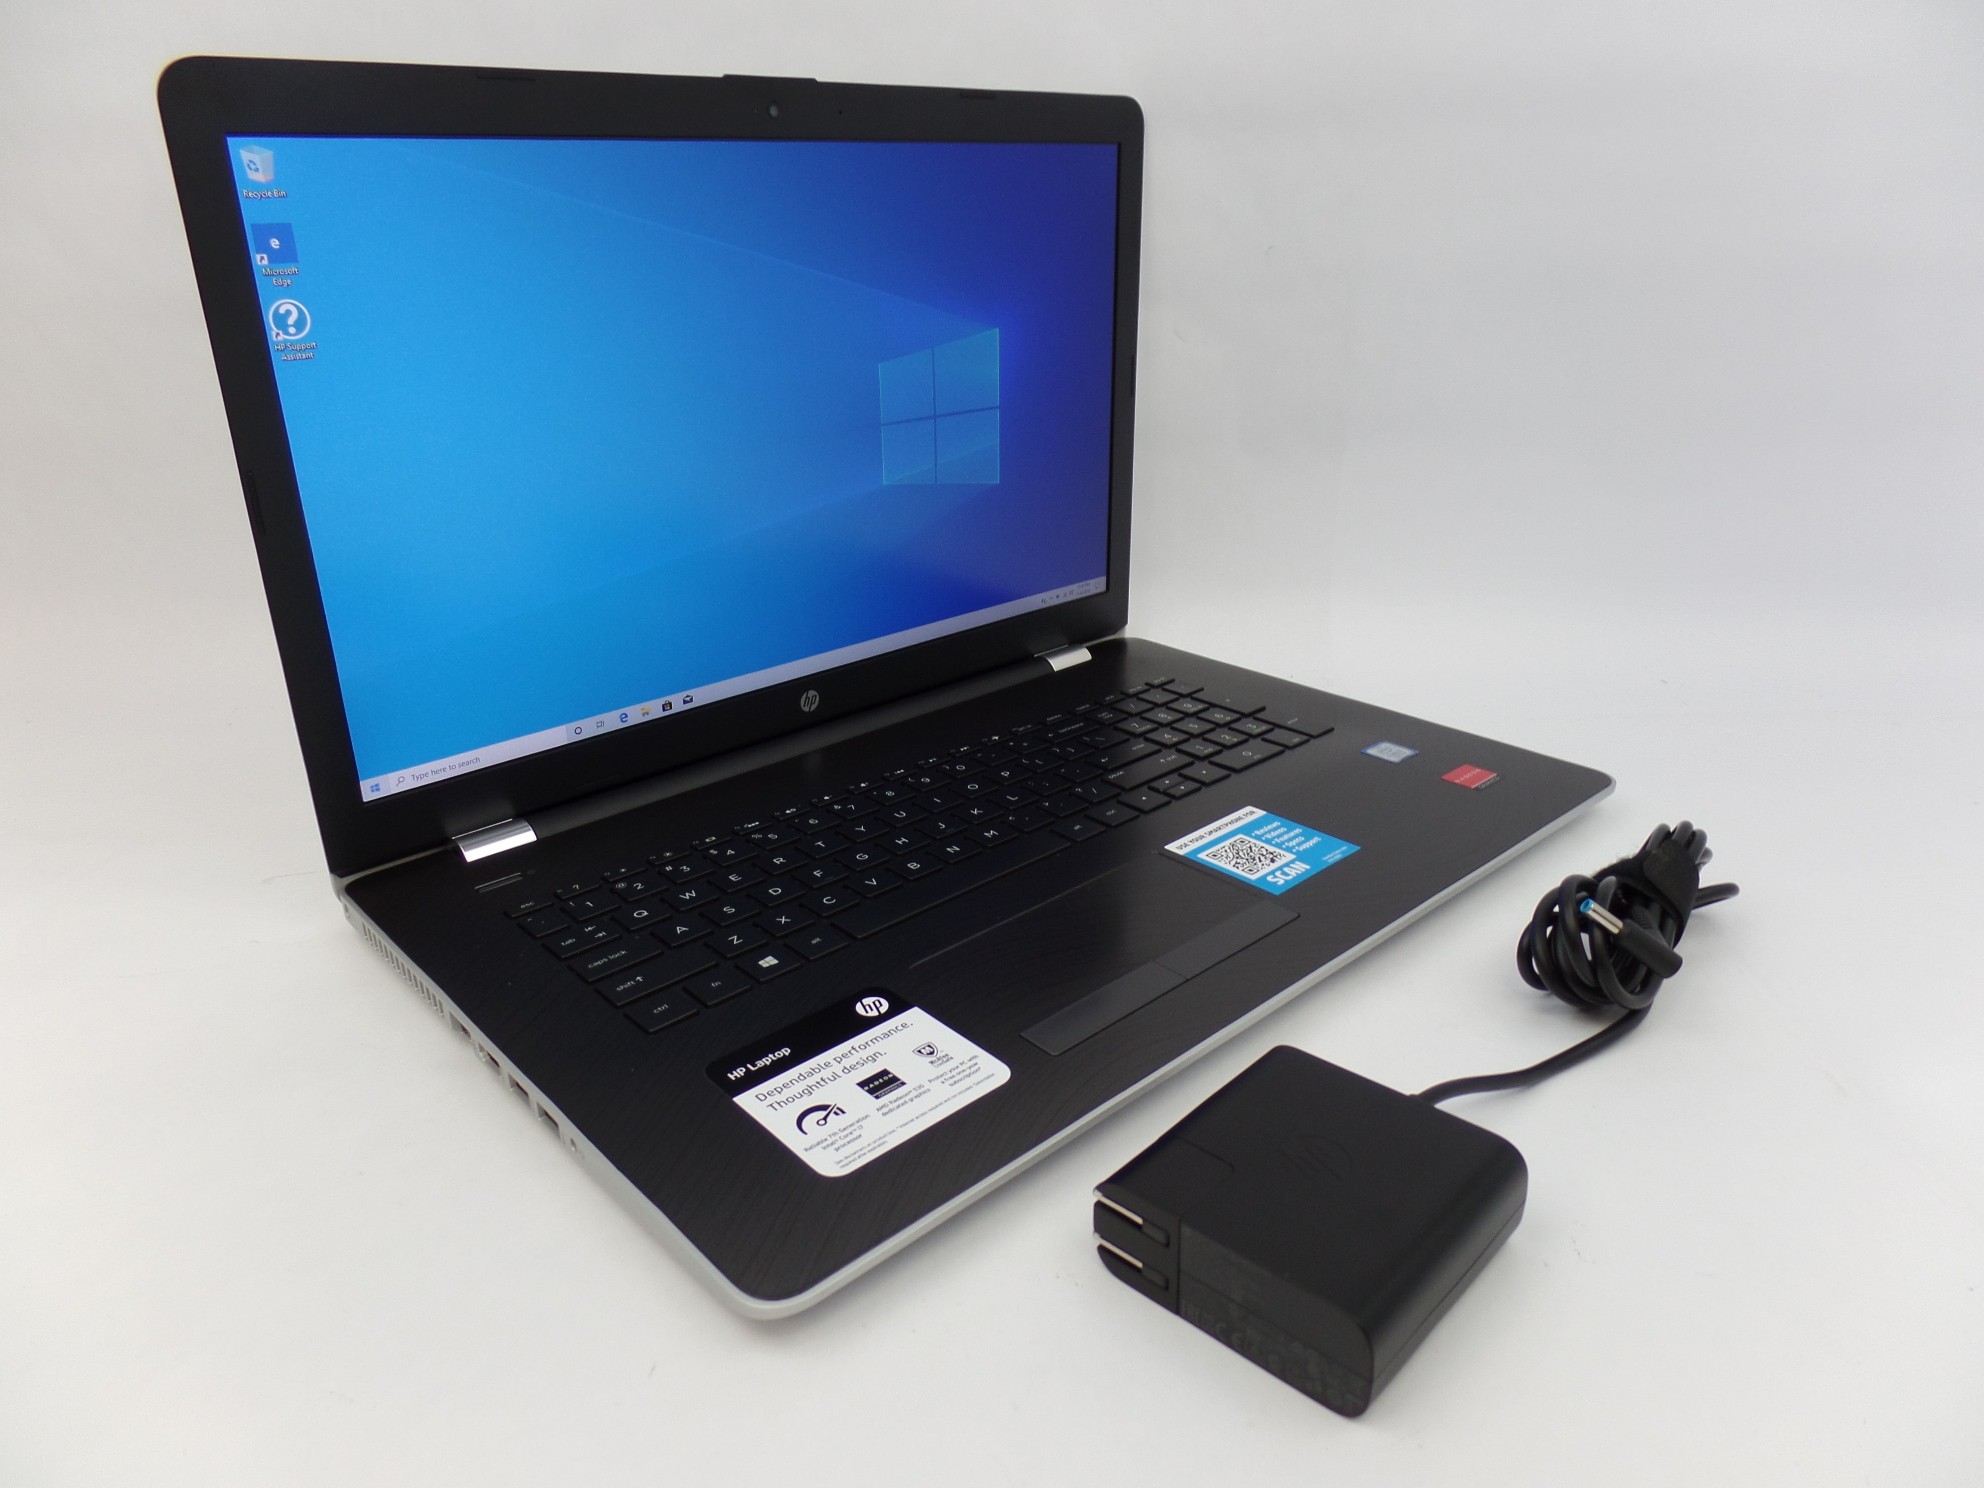 HP 17-bs025cl 17.3" FHD i7-7500U 2.7GHz 16GB 1TB HDD W10H Laptop